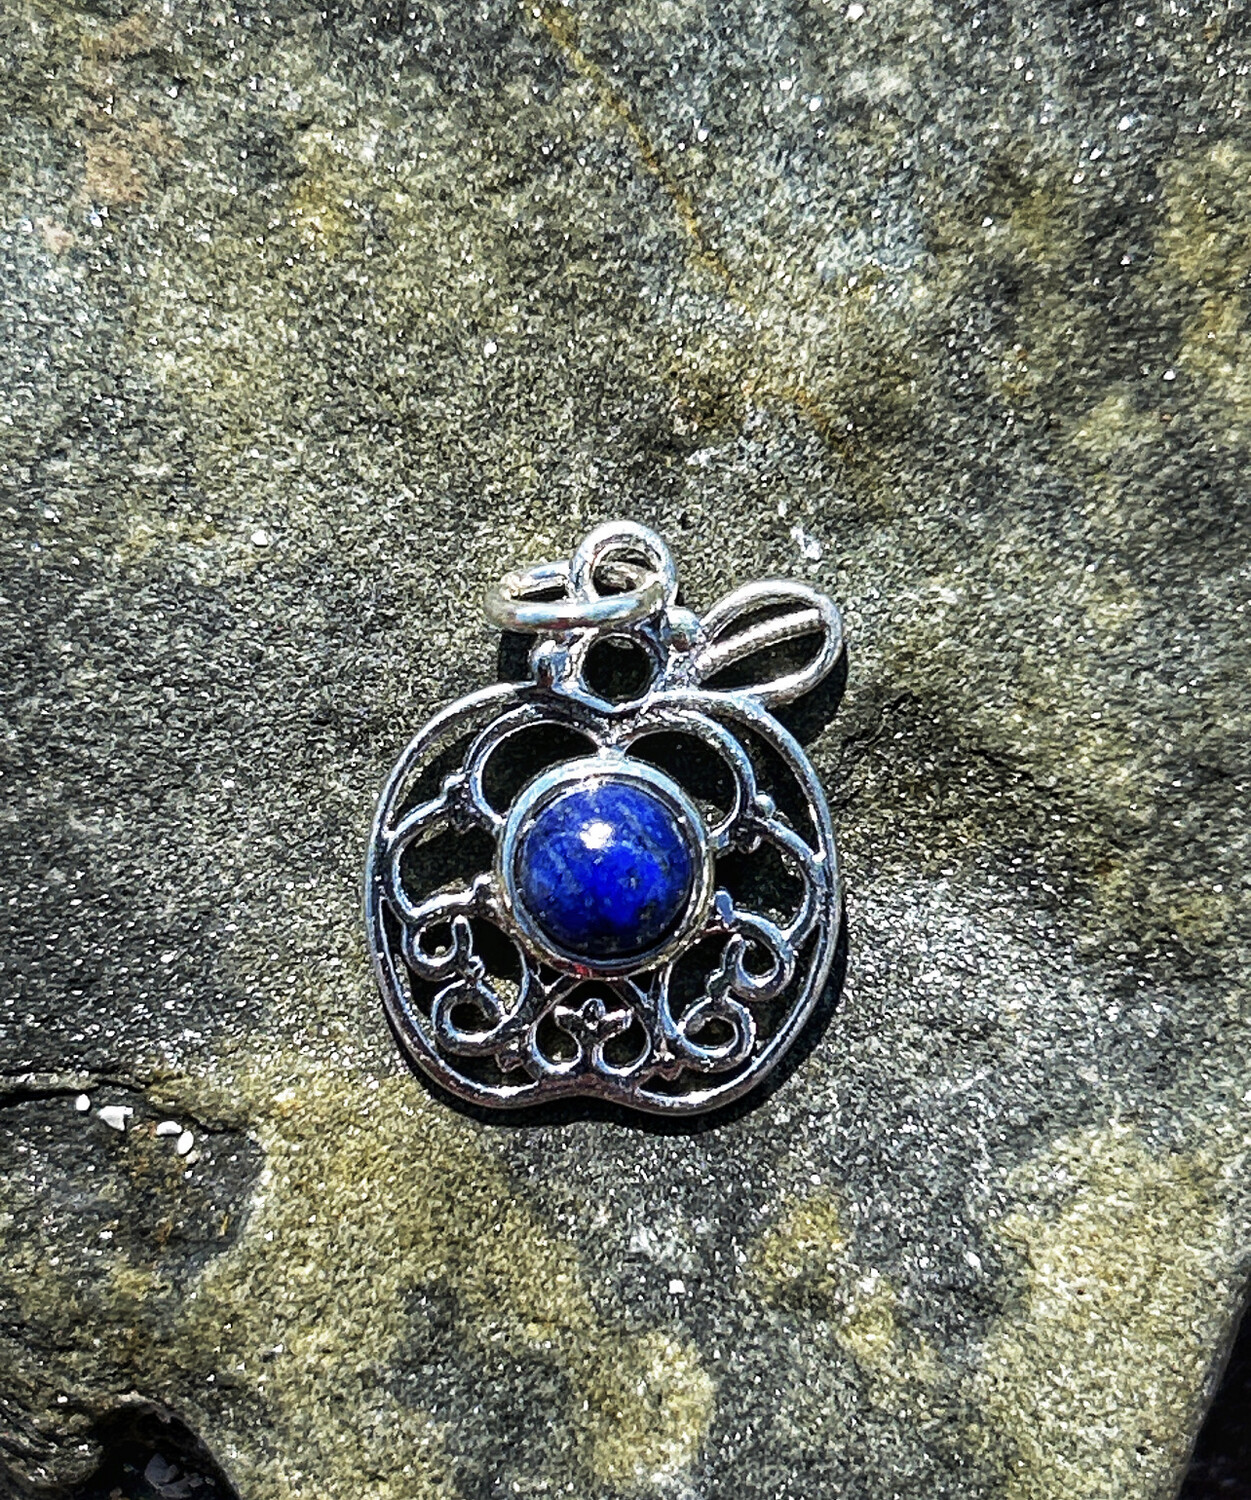 « Série spéciale Orcades » pendentif  en argent informé sur le site du ring of brodgar cercle de guérison avec lapis lazuli no 52